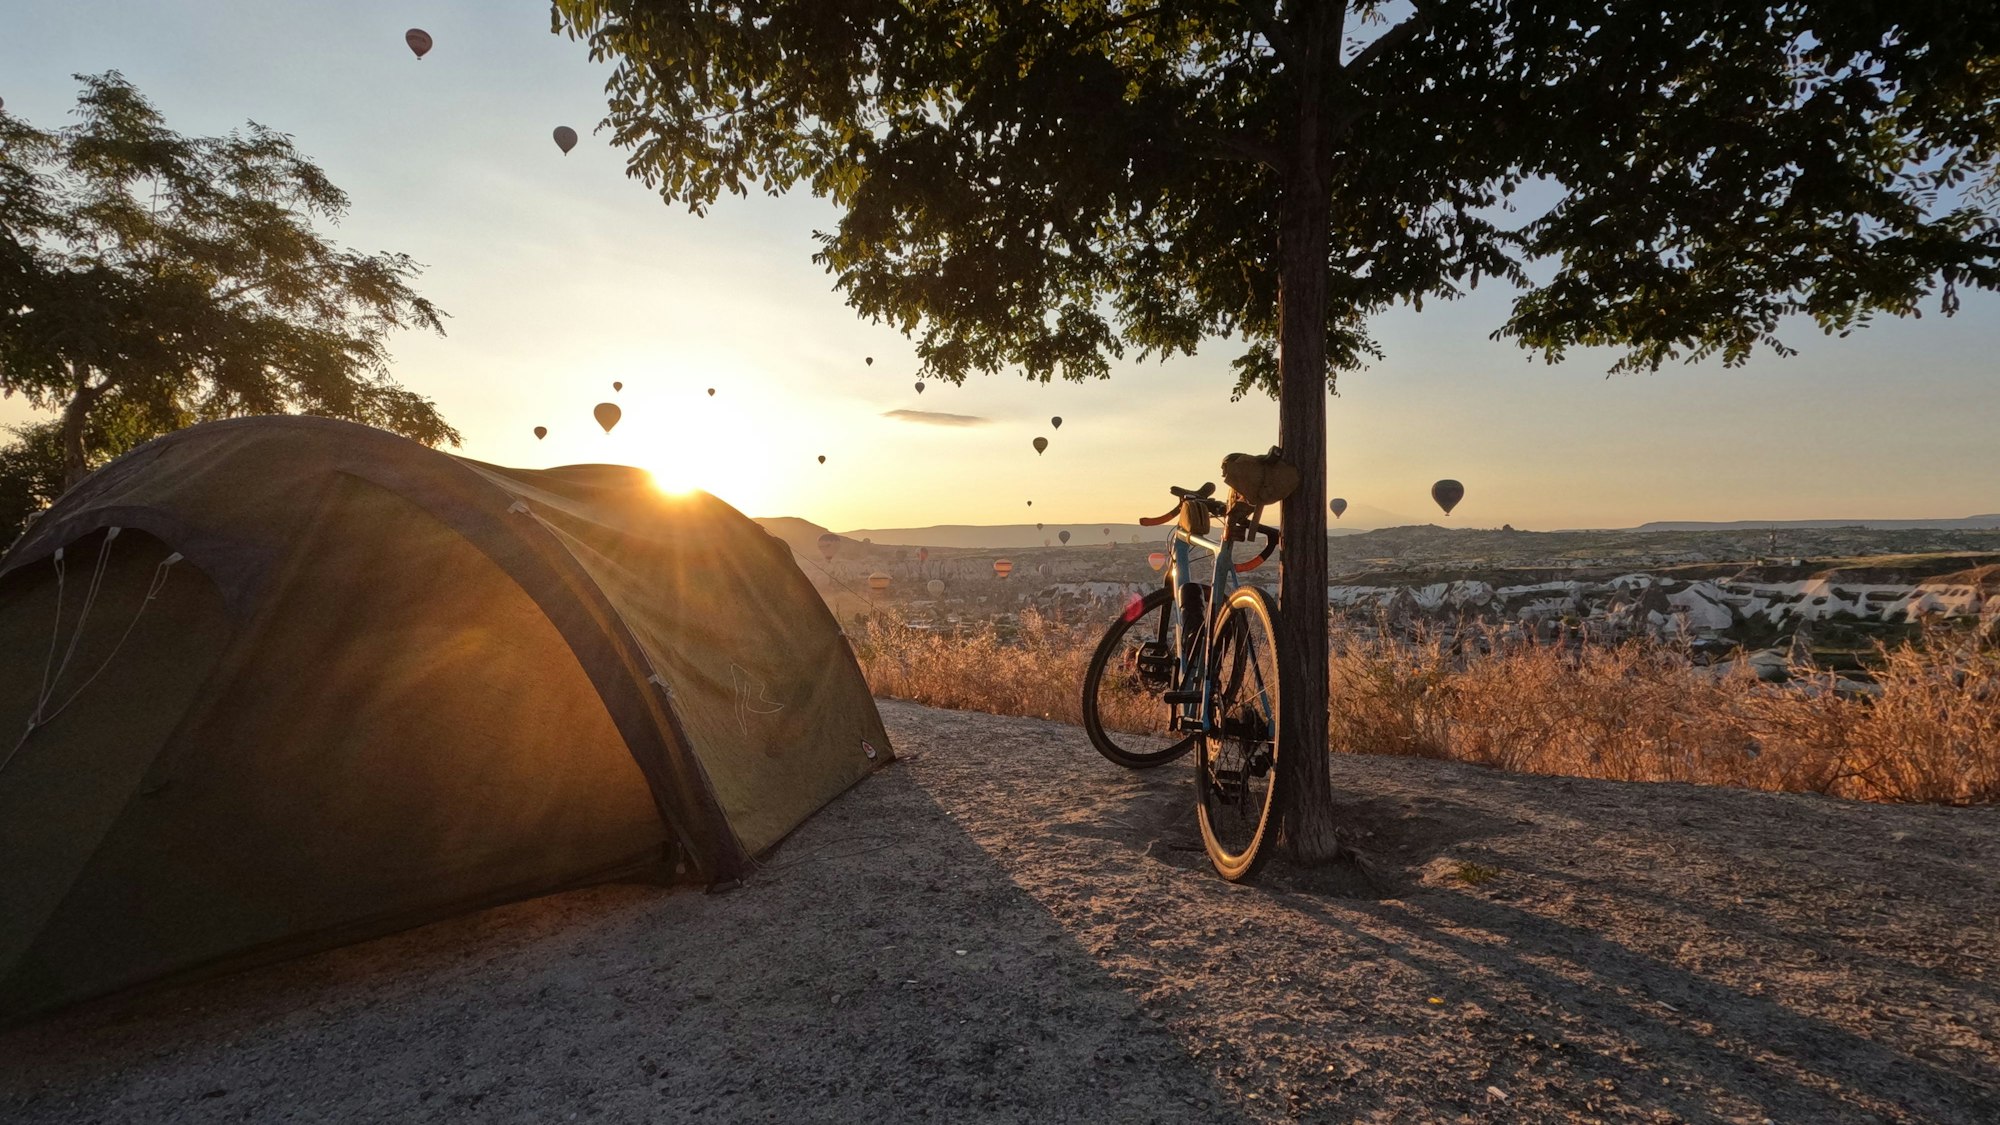 Ein Rad lehnt an einen Baum neben einem Zelt im Hintergrund geht die Sonne unter und bescheint Heißluftbaloons am Himmel